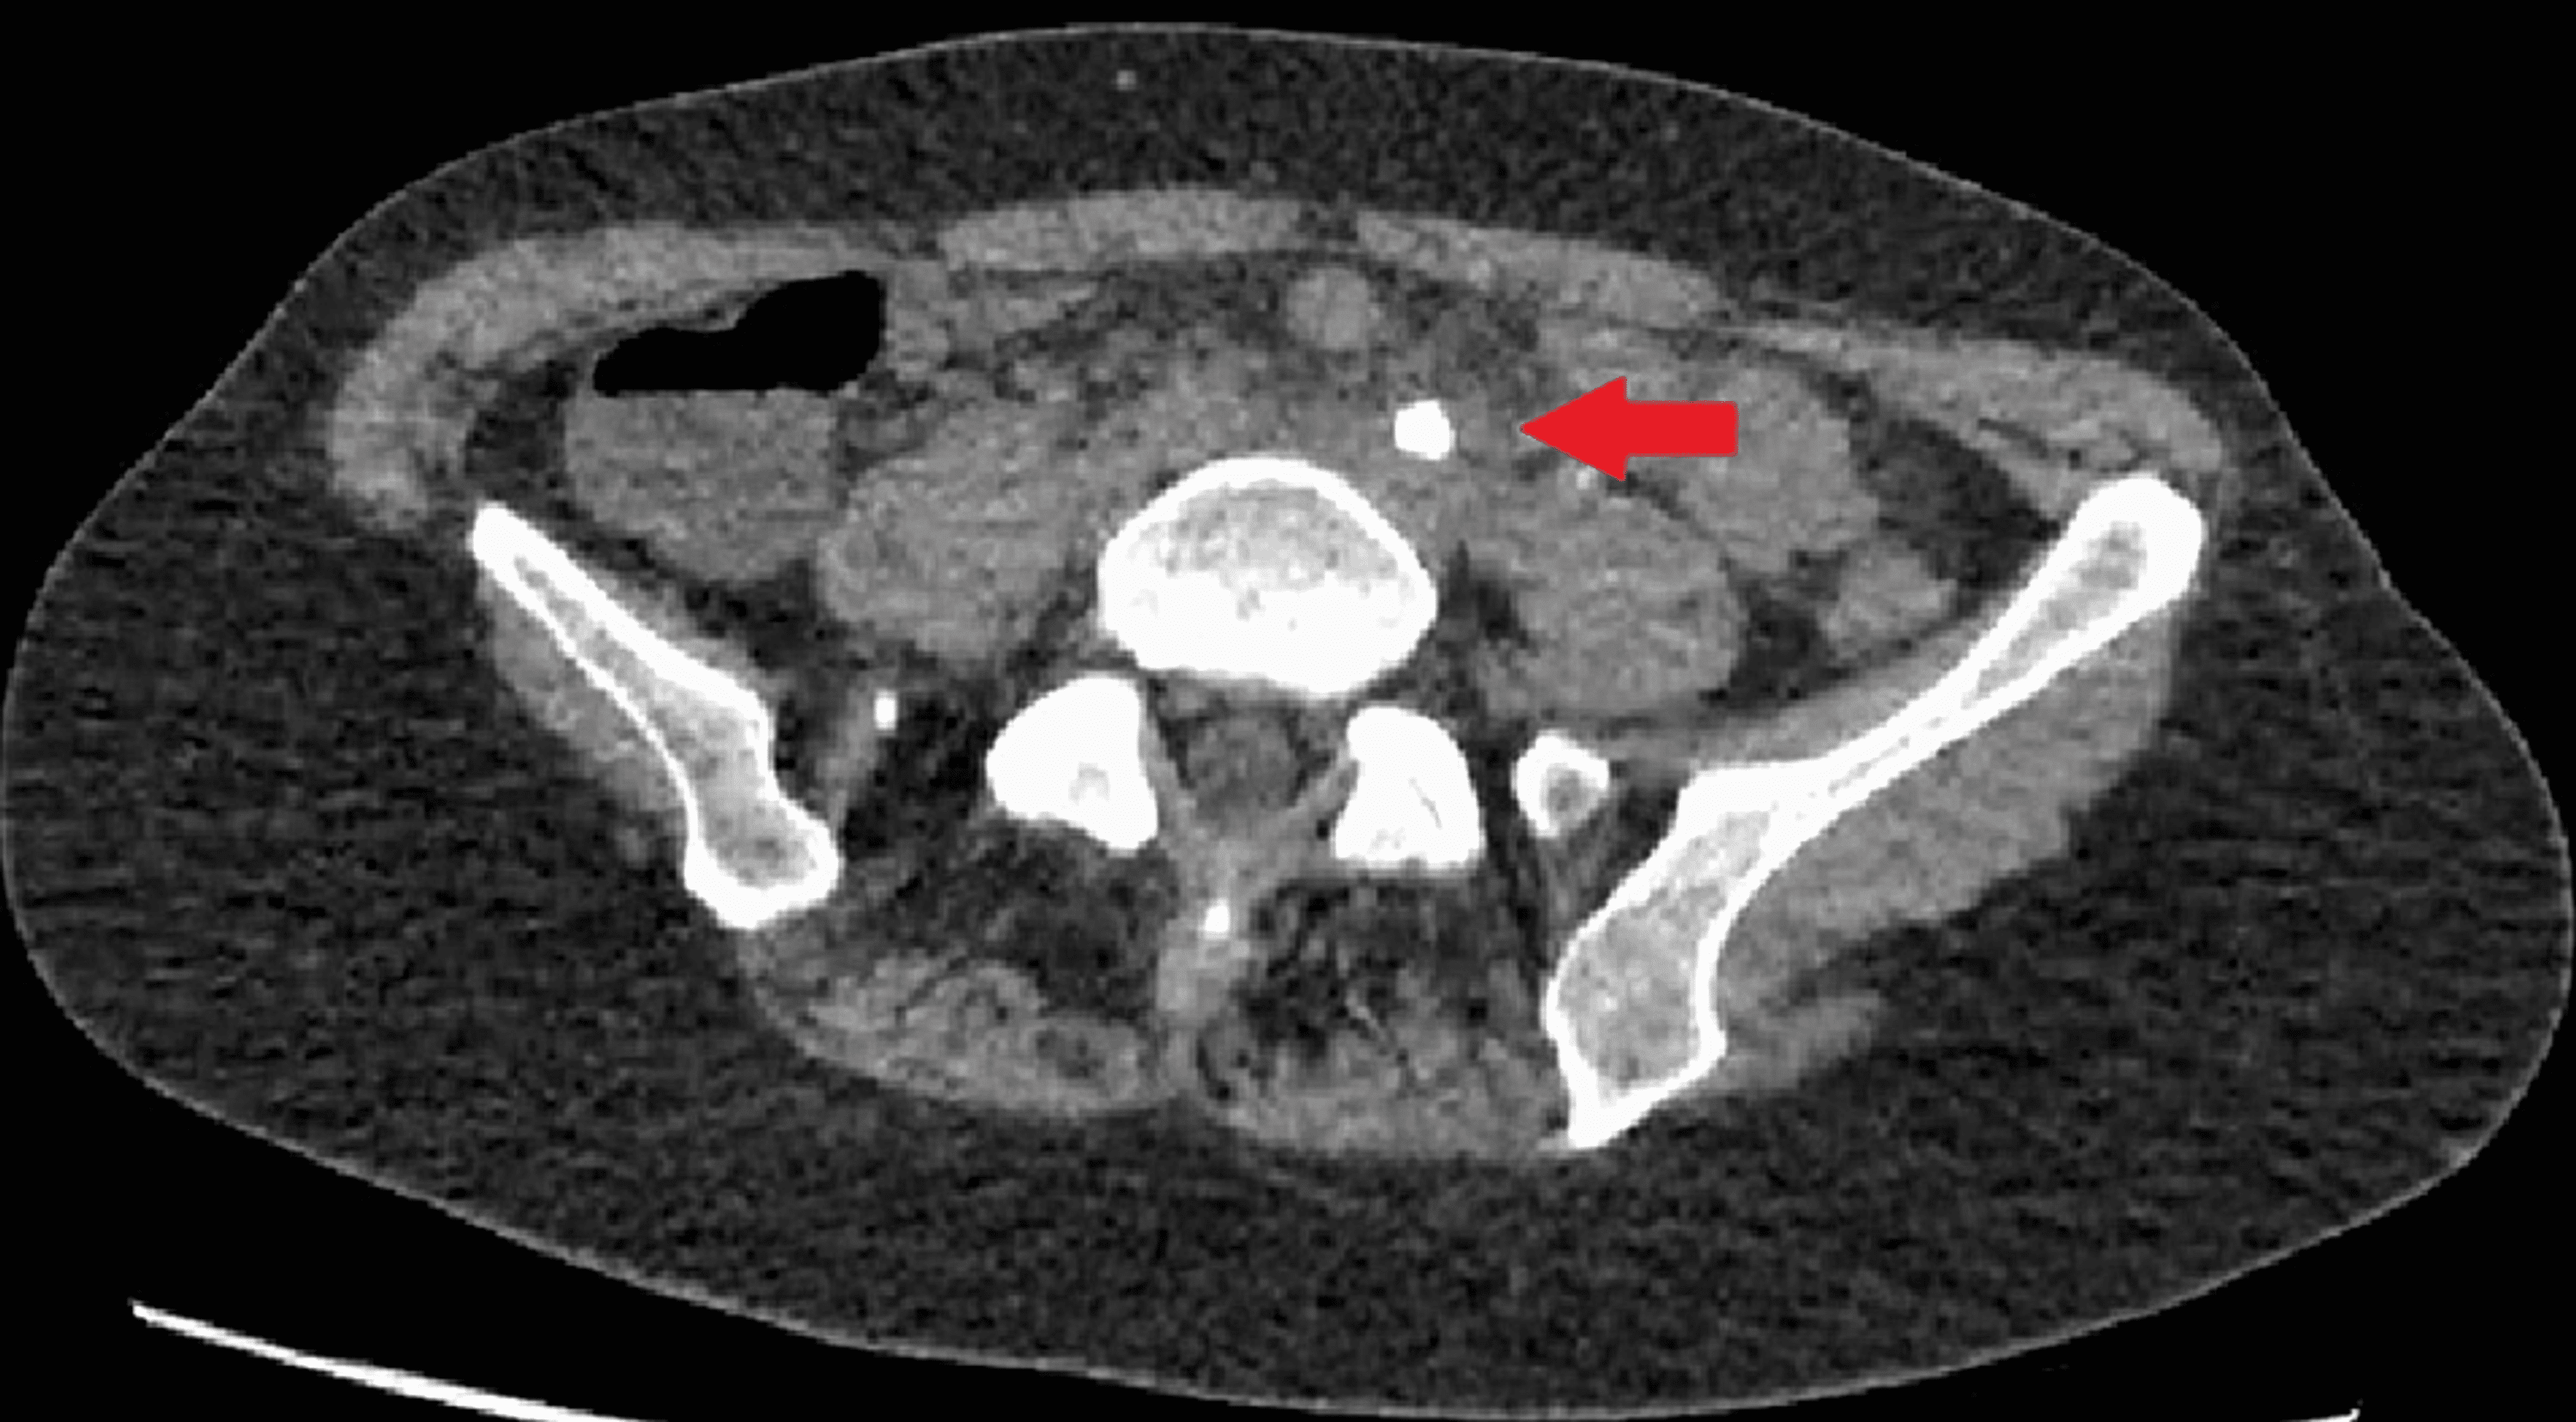 neobladder ultrasound